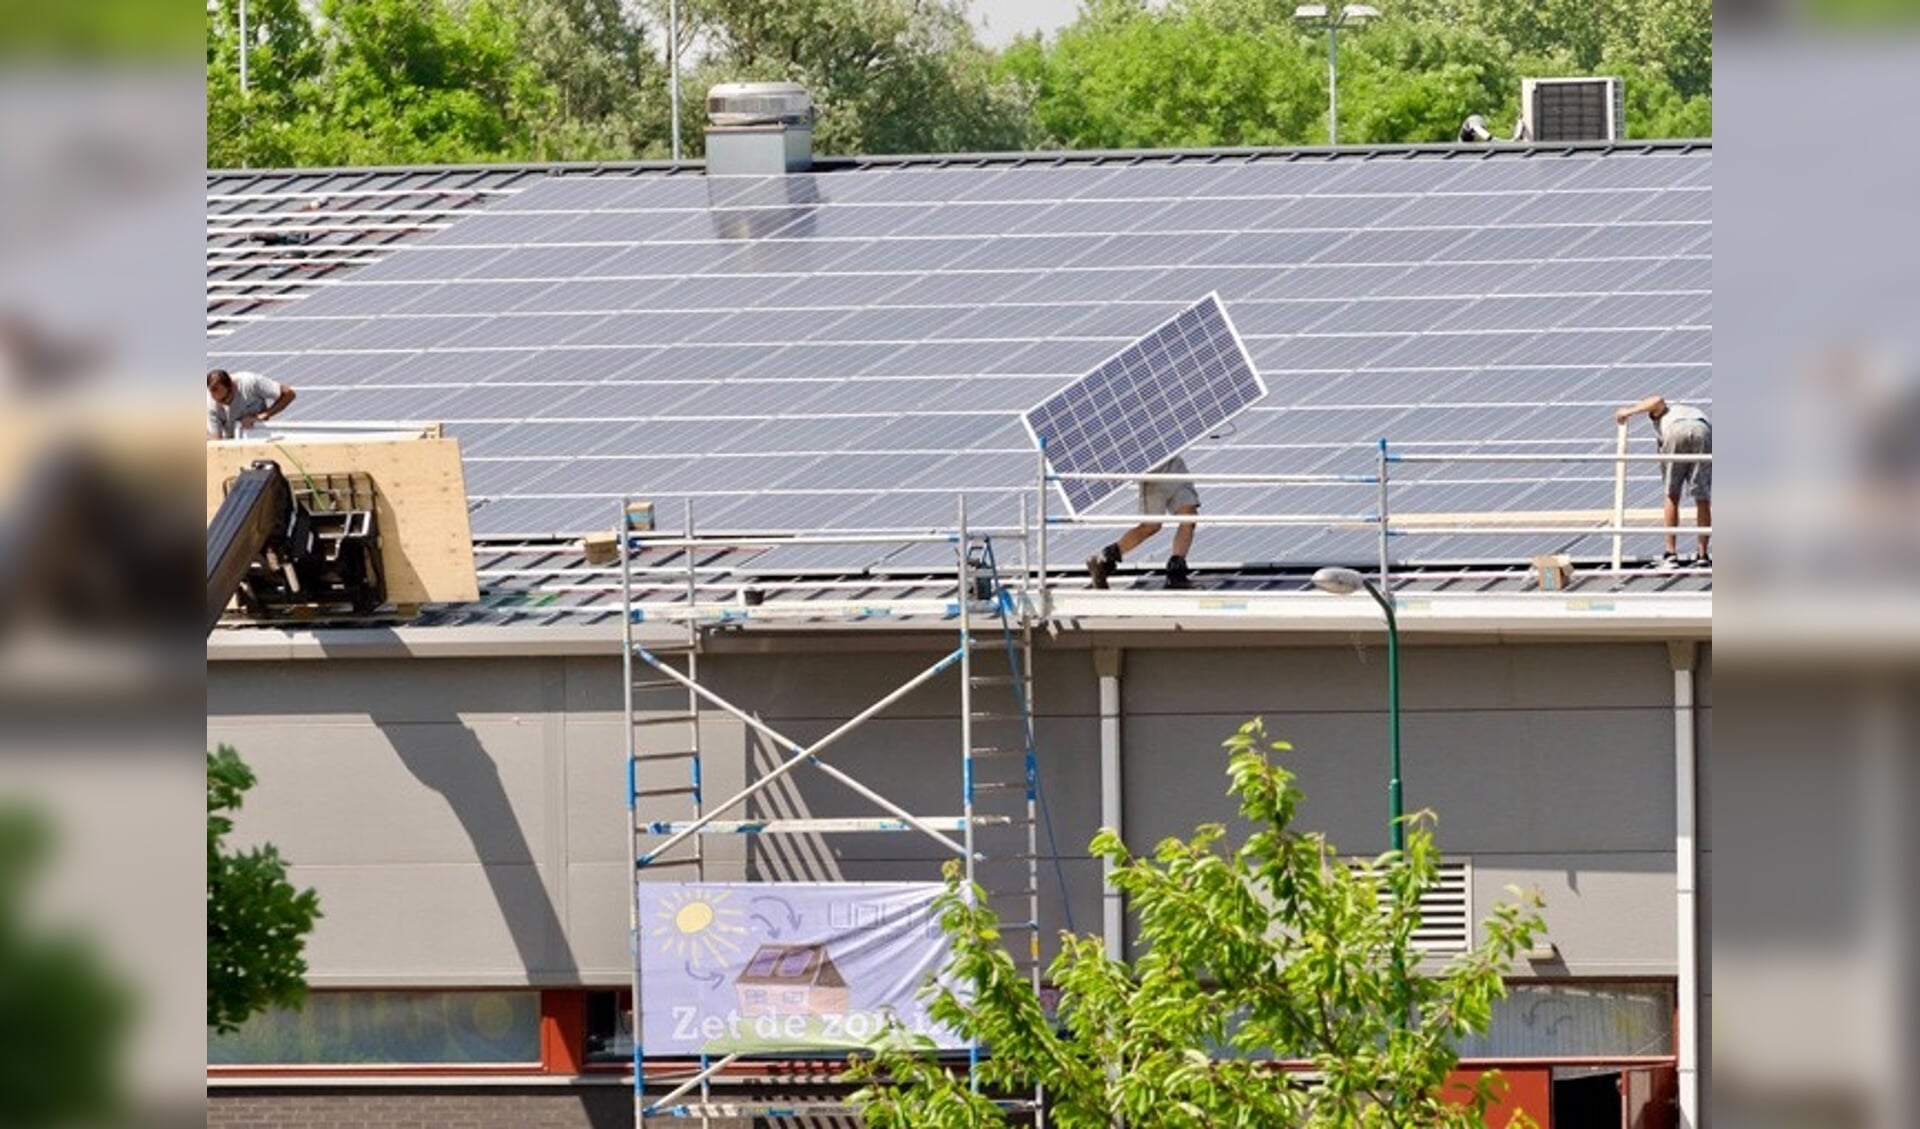 Op Mariënhoeve zijn door EWEC vorig jaar 480 zonnepanelen geplaatst, dit jaar volgt fase 2